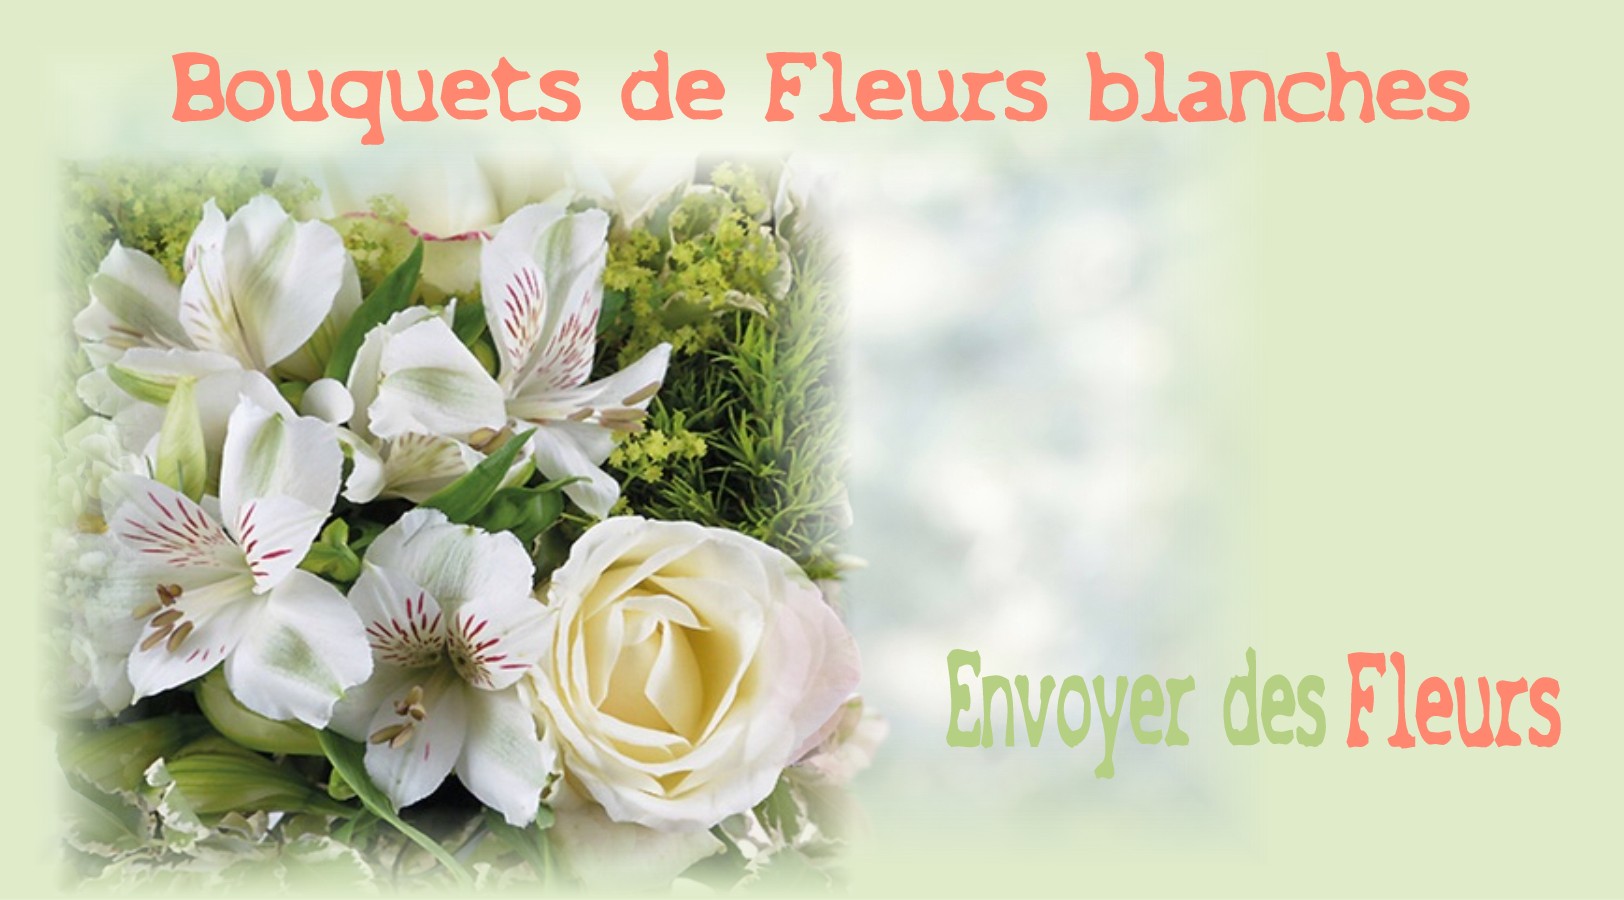 BOUQUETS DE FLEURS BLANCHES -FLEURISTE des ALPES DE HAUTE PROVENCE - ENVOYER DES FLEURS